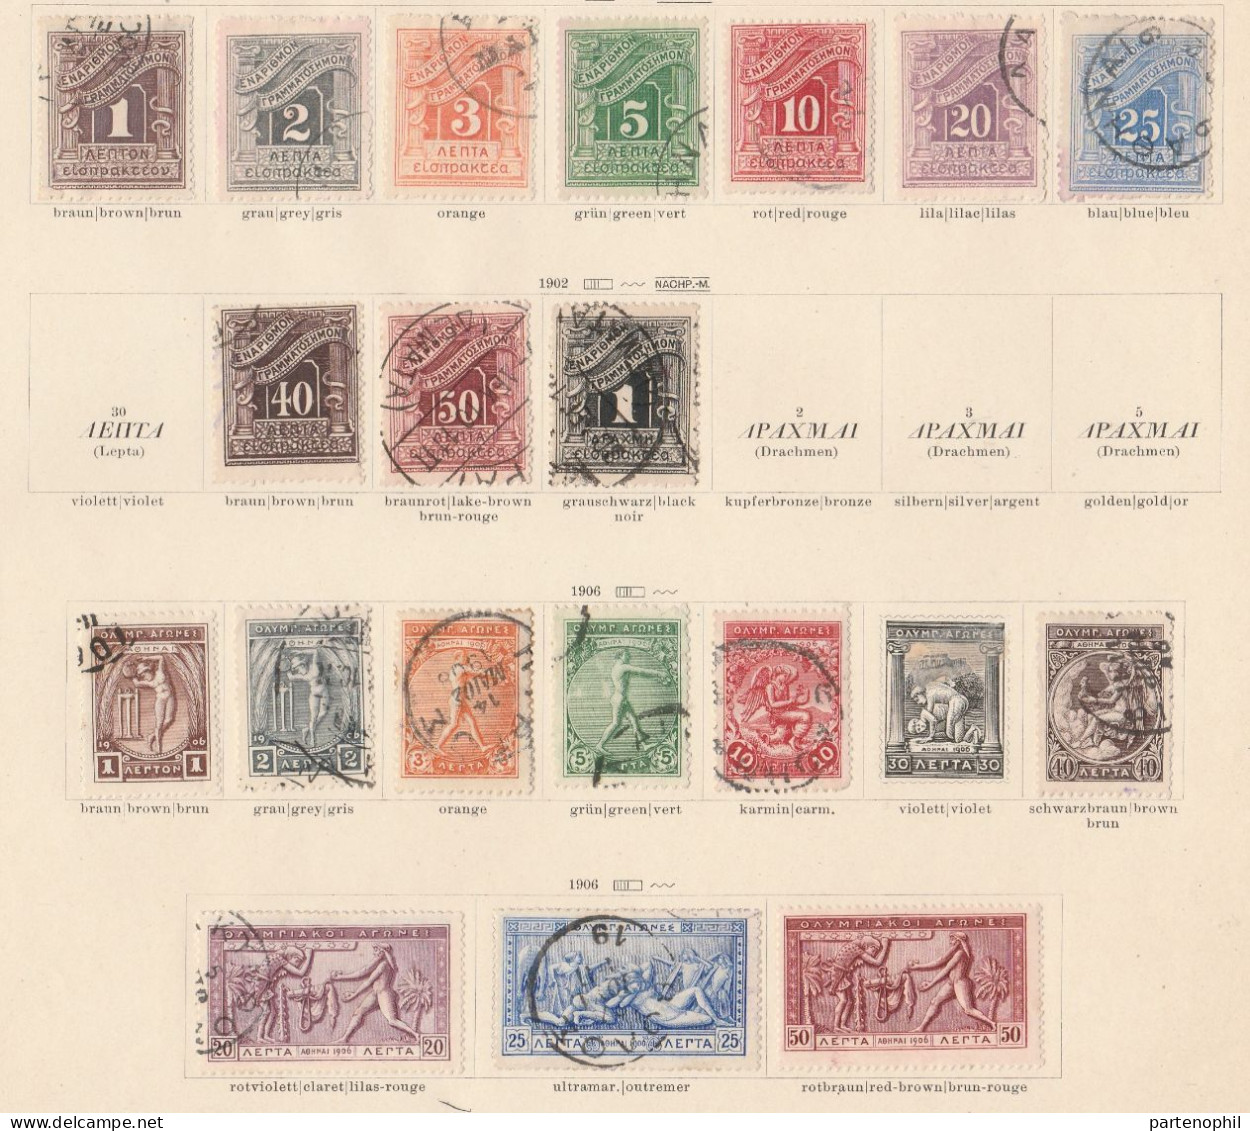 685 - Greece Grecia 1876/1927 - Inizio di collezione di francobolli usati montata in fogli d’album, anche una piccola se